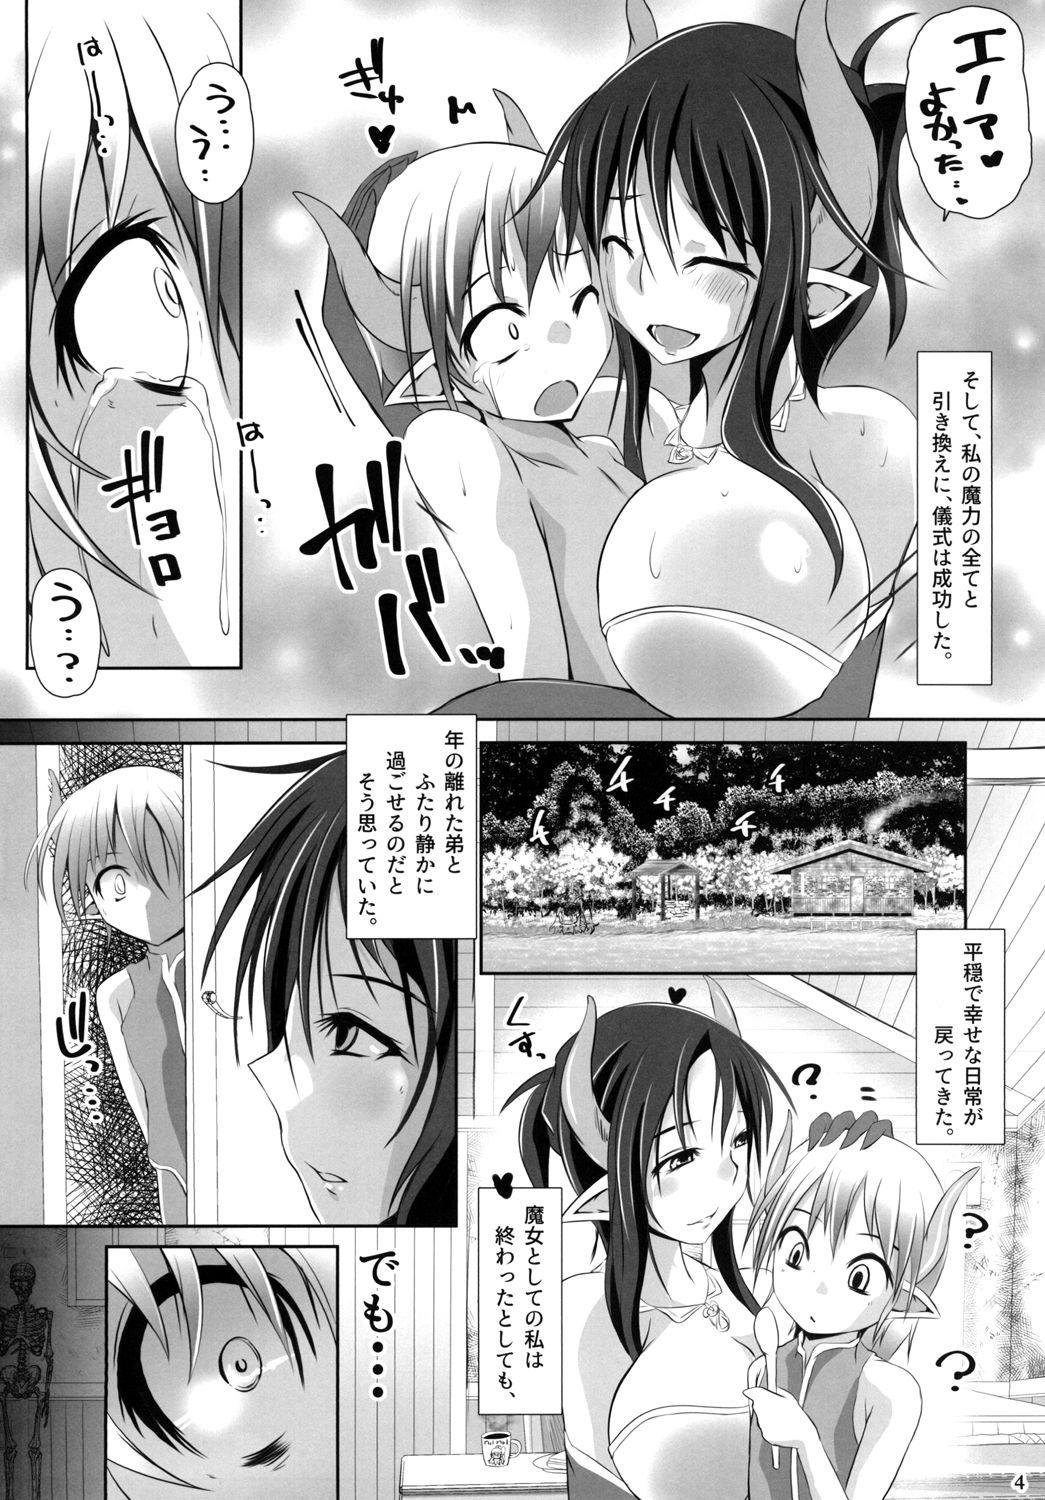 Ano Ayakashi no Ko Harcore - Page 4